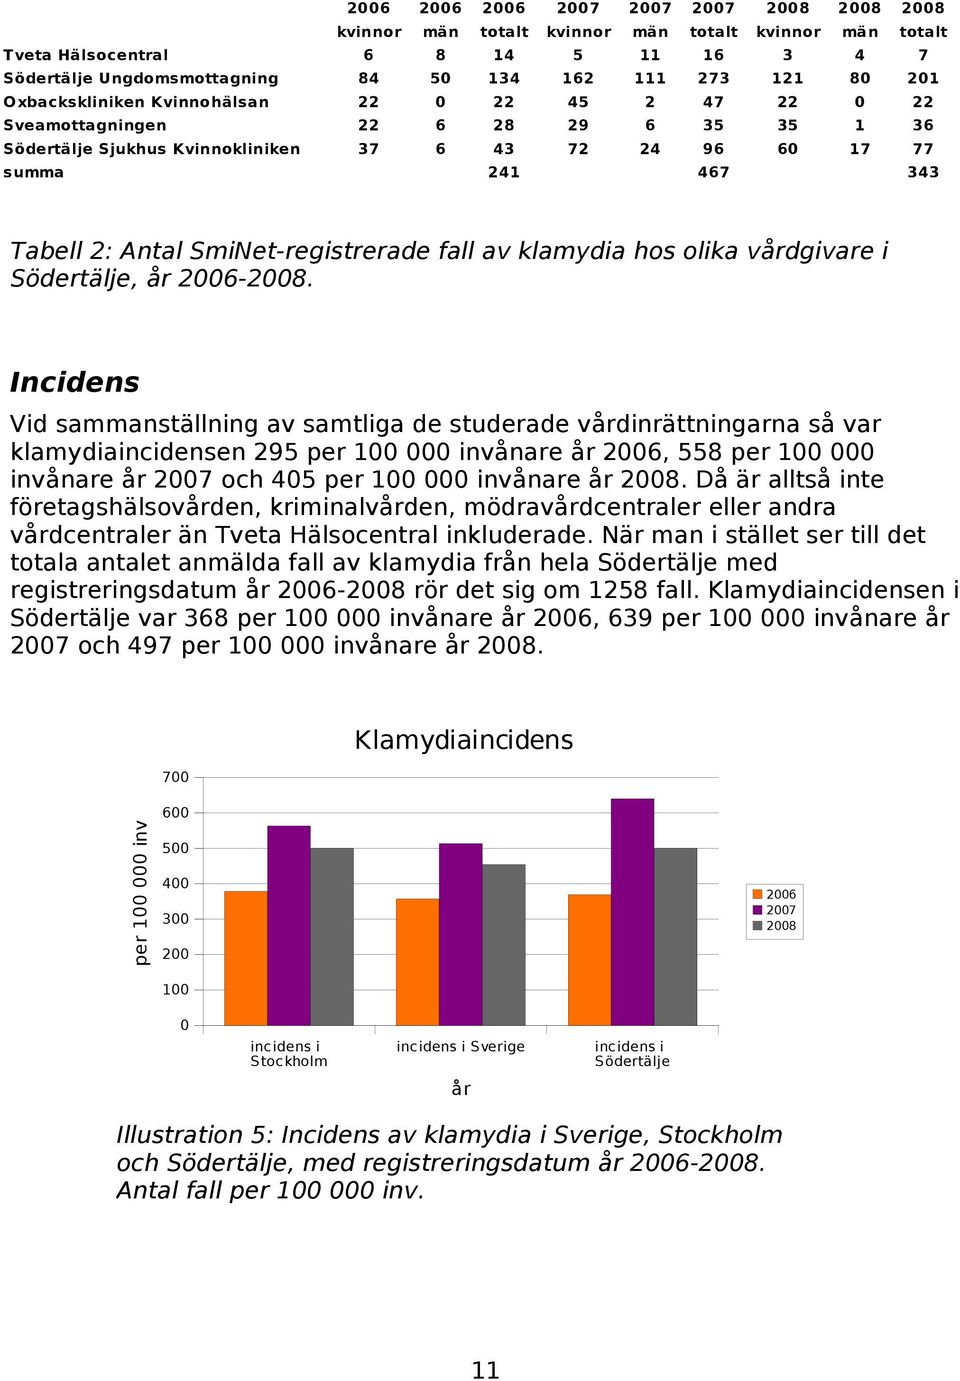 SmiNet-registrerade fall av klamydia hos olika vårdgivare i Södertälje, år 2006-2008.